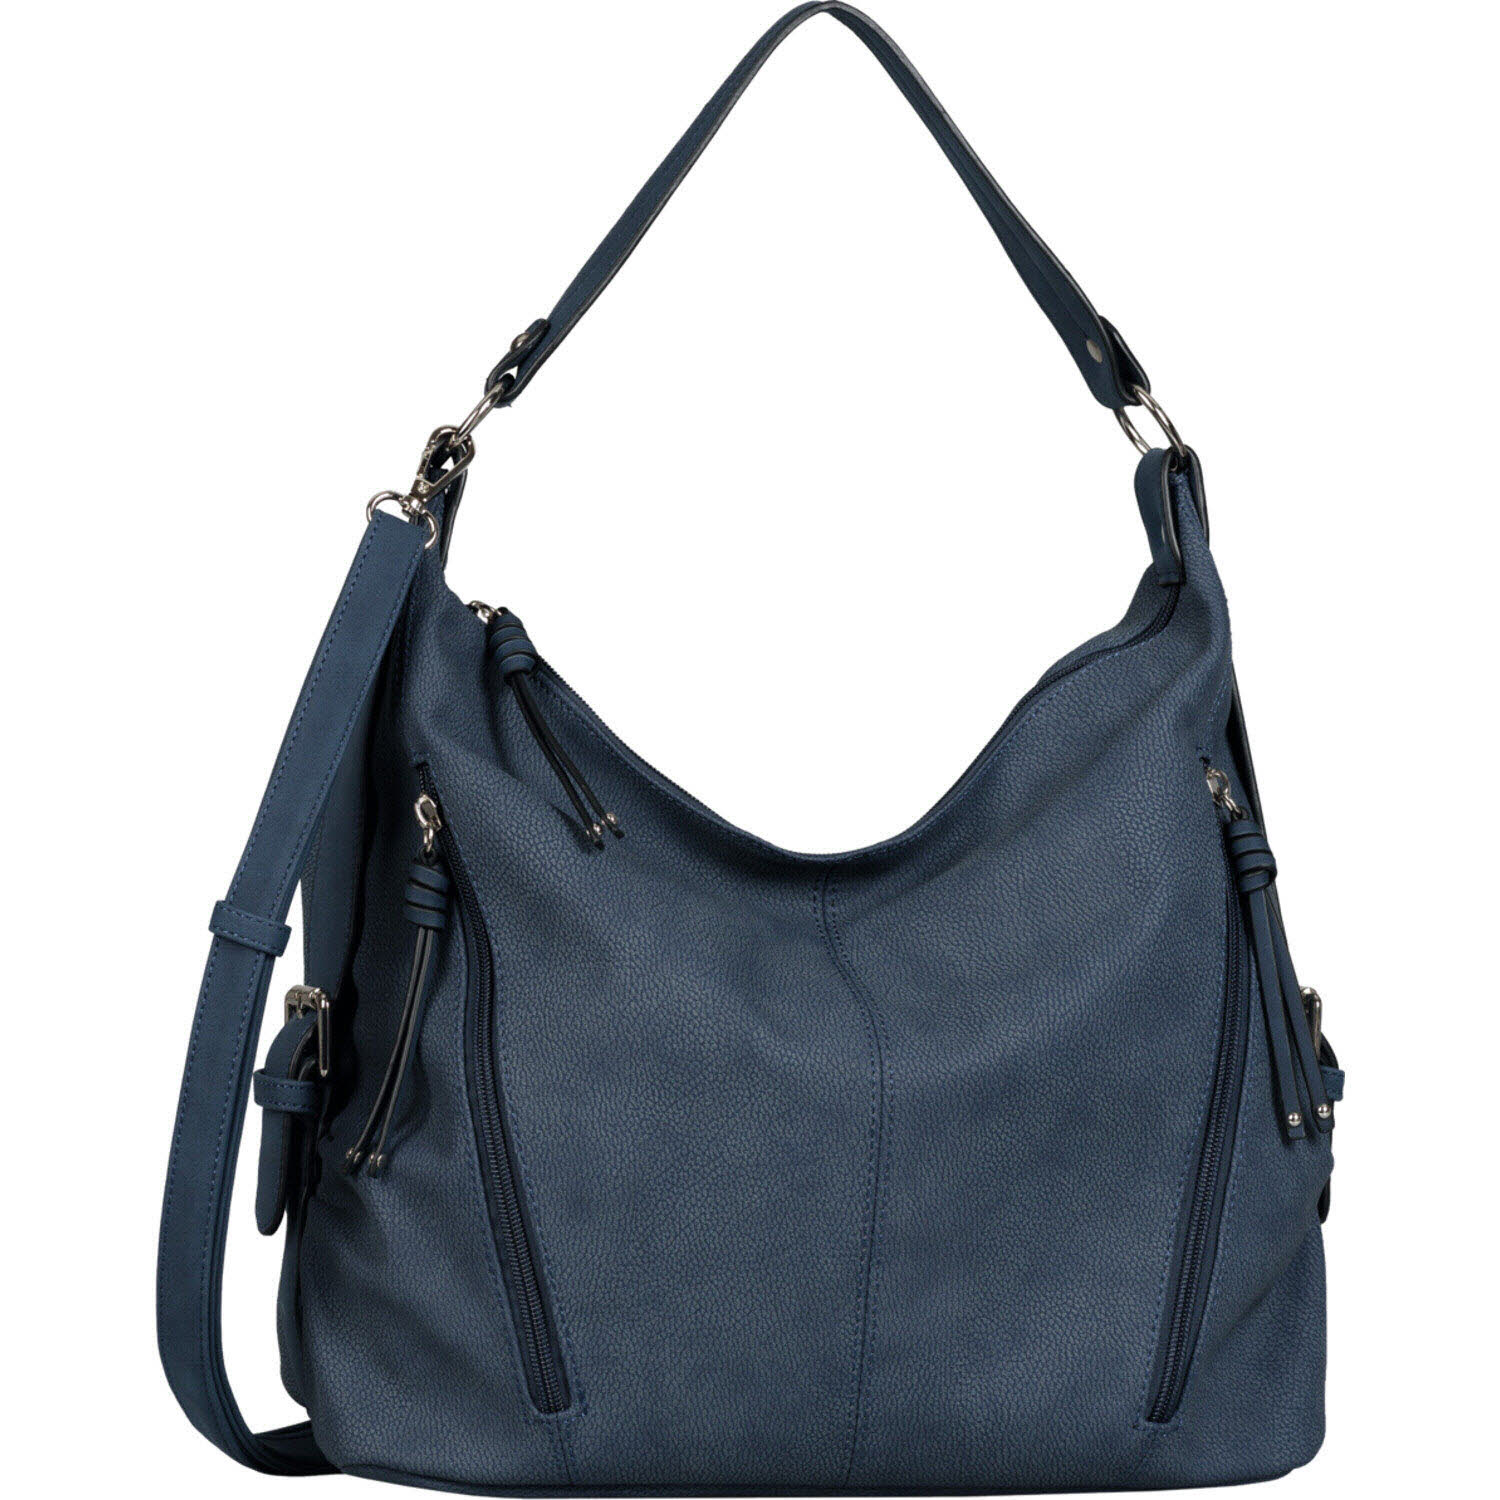 Damen Hobo Bag von Tom Tailor auch in Blau erhältlich